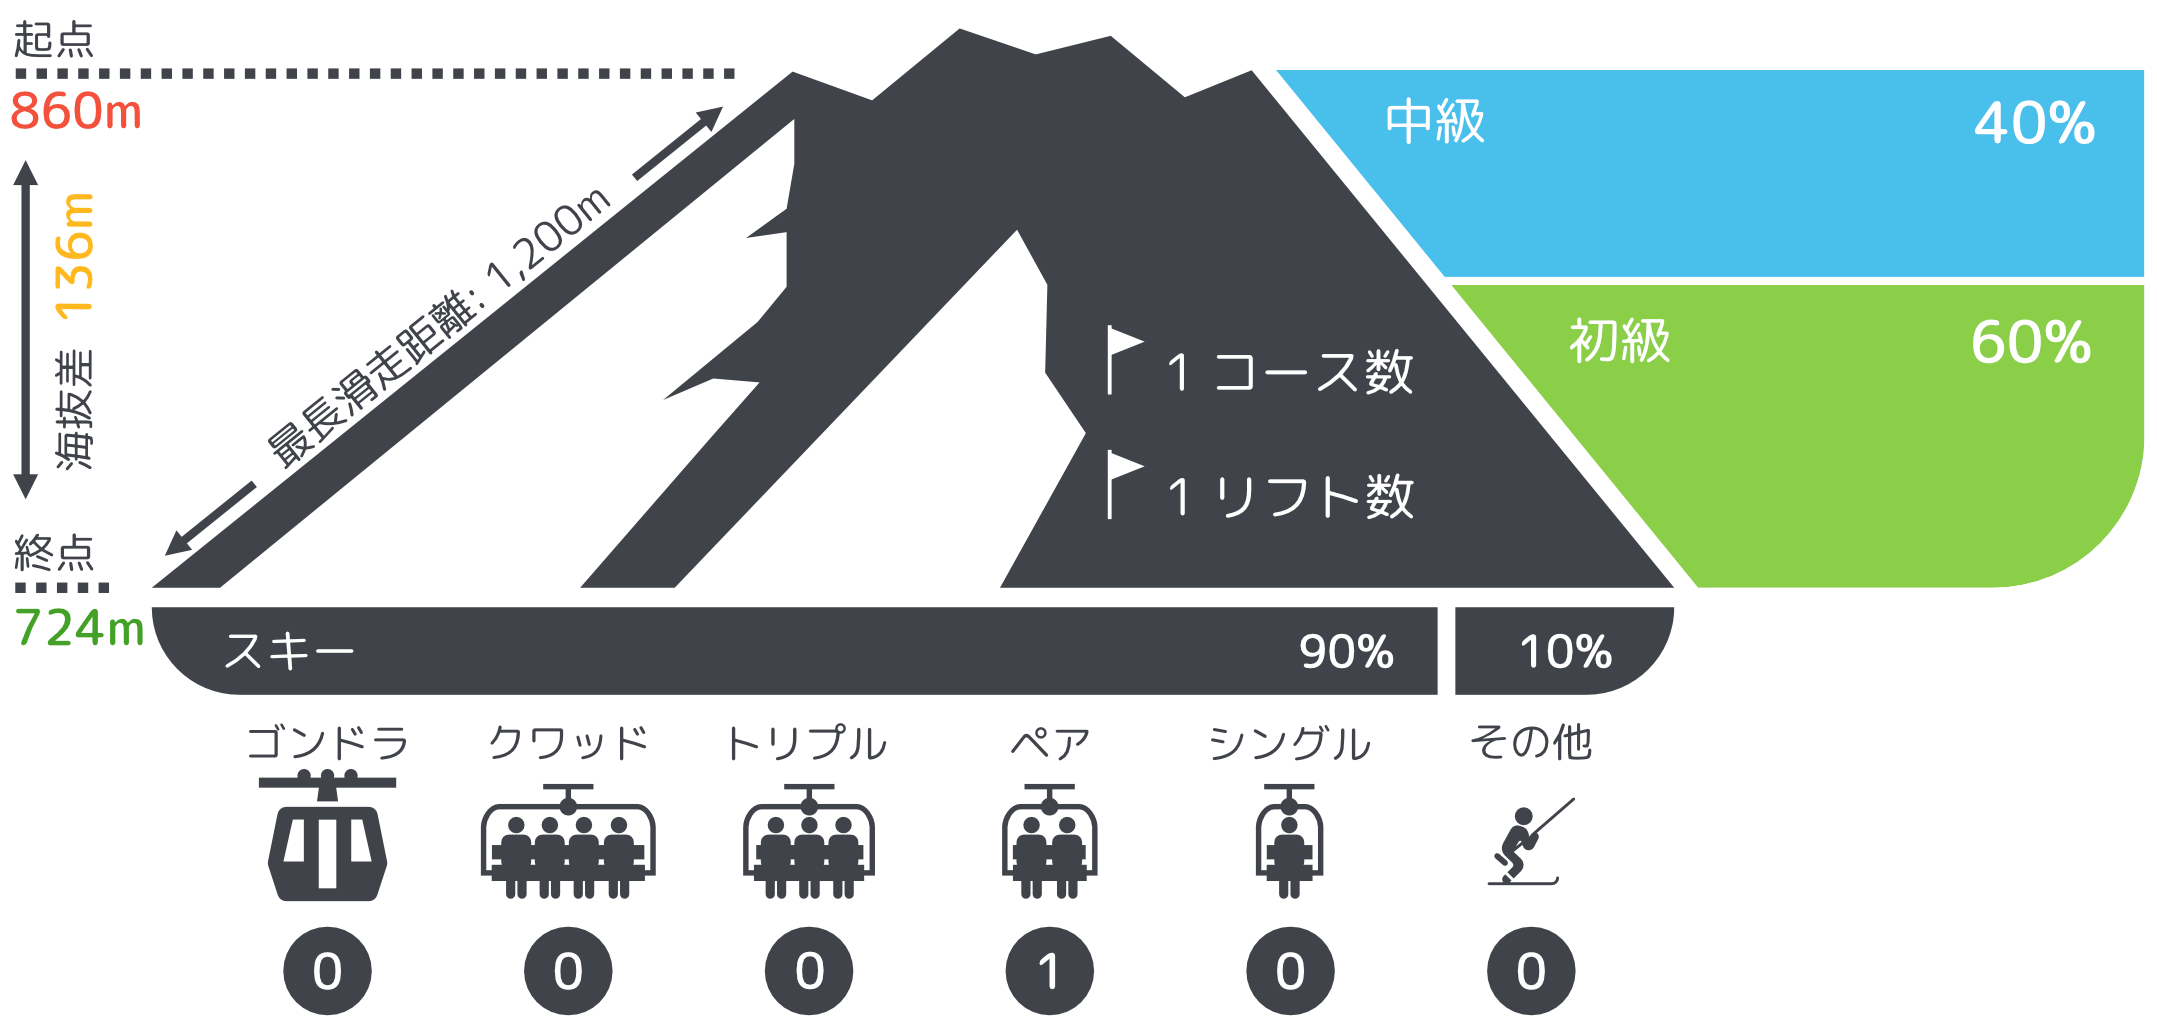 妙高スキーパークコース紹介